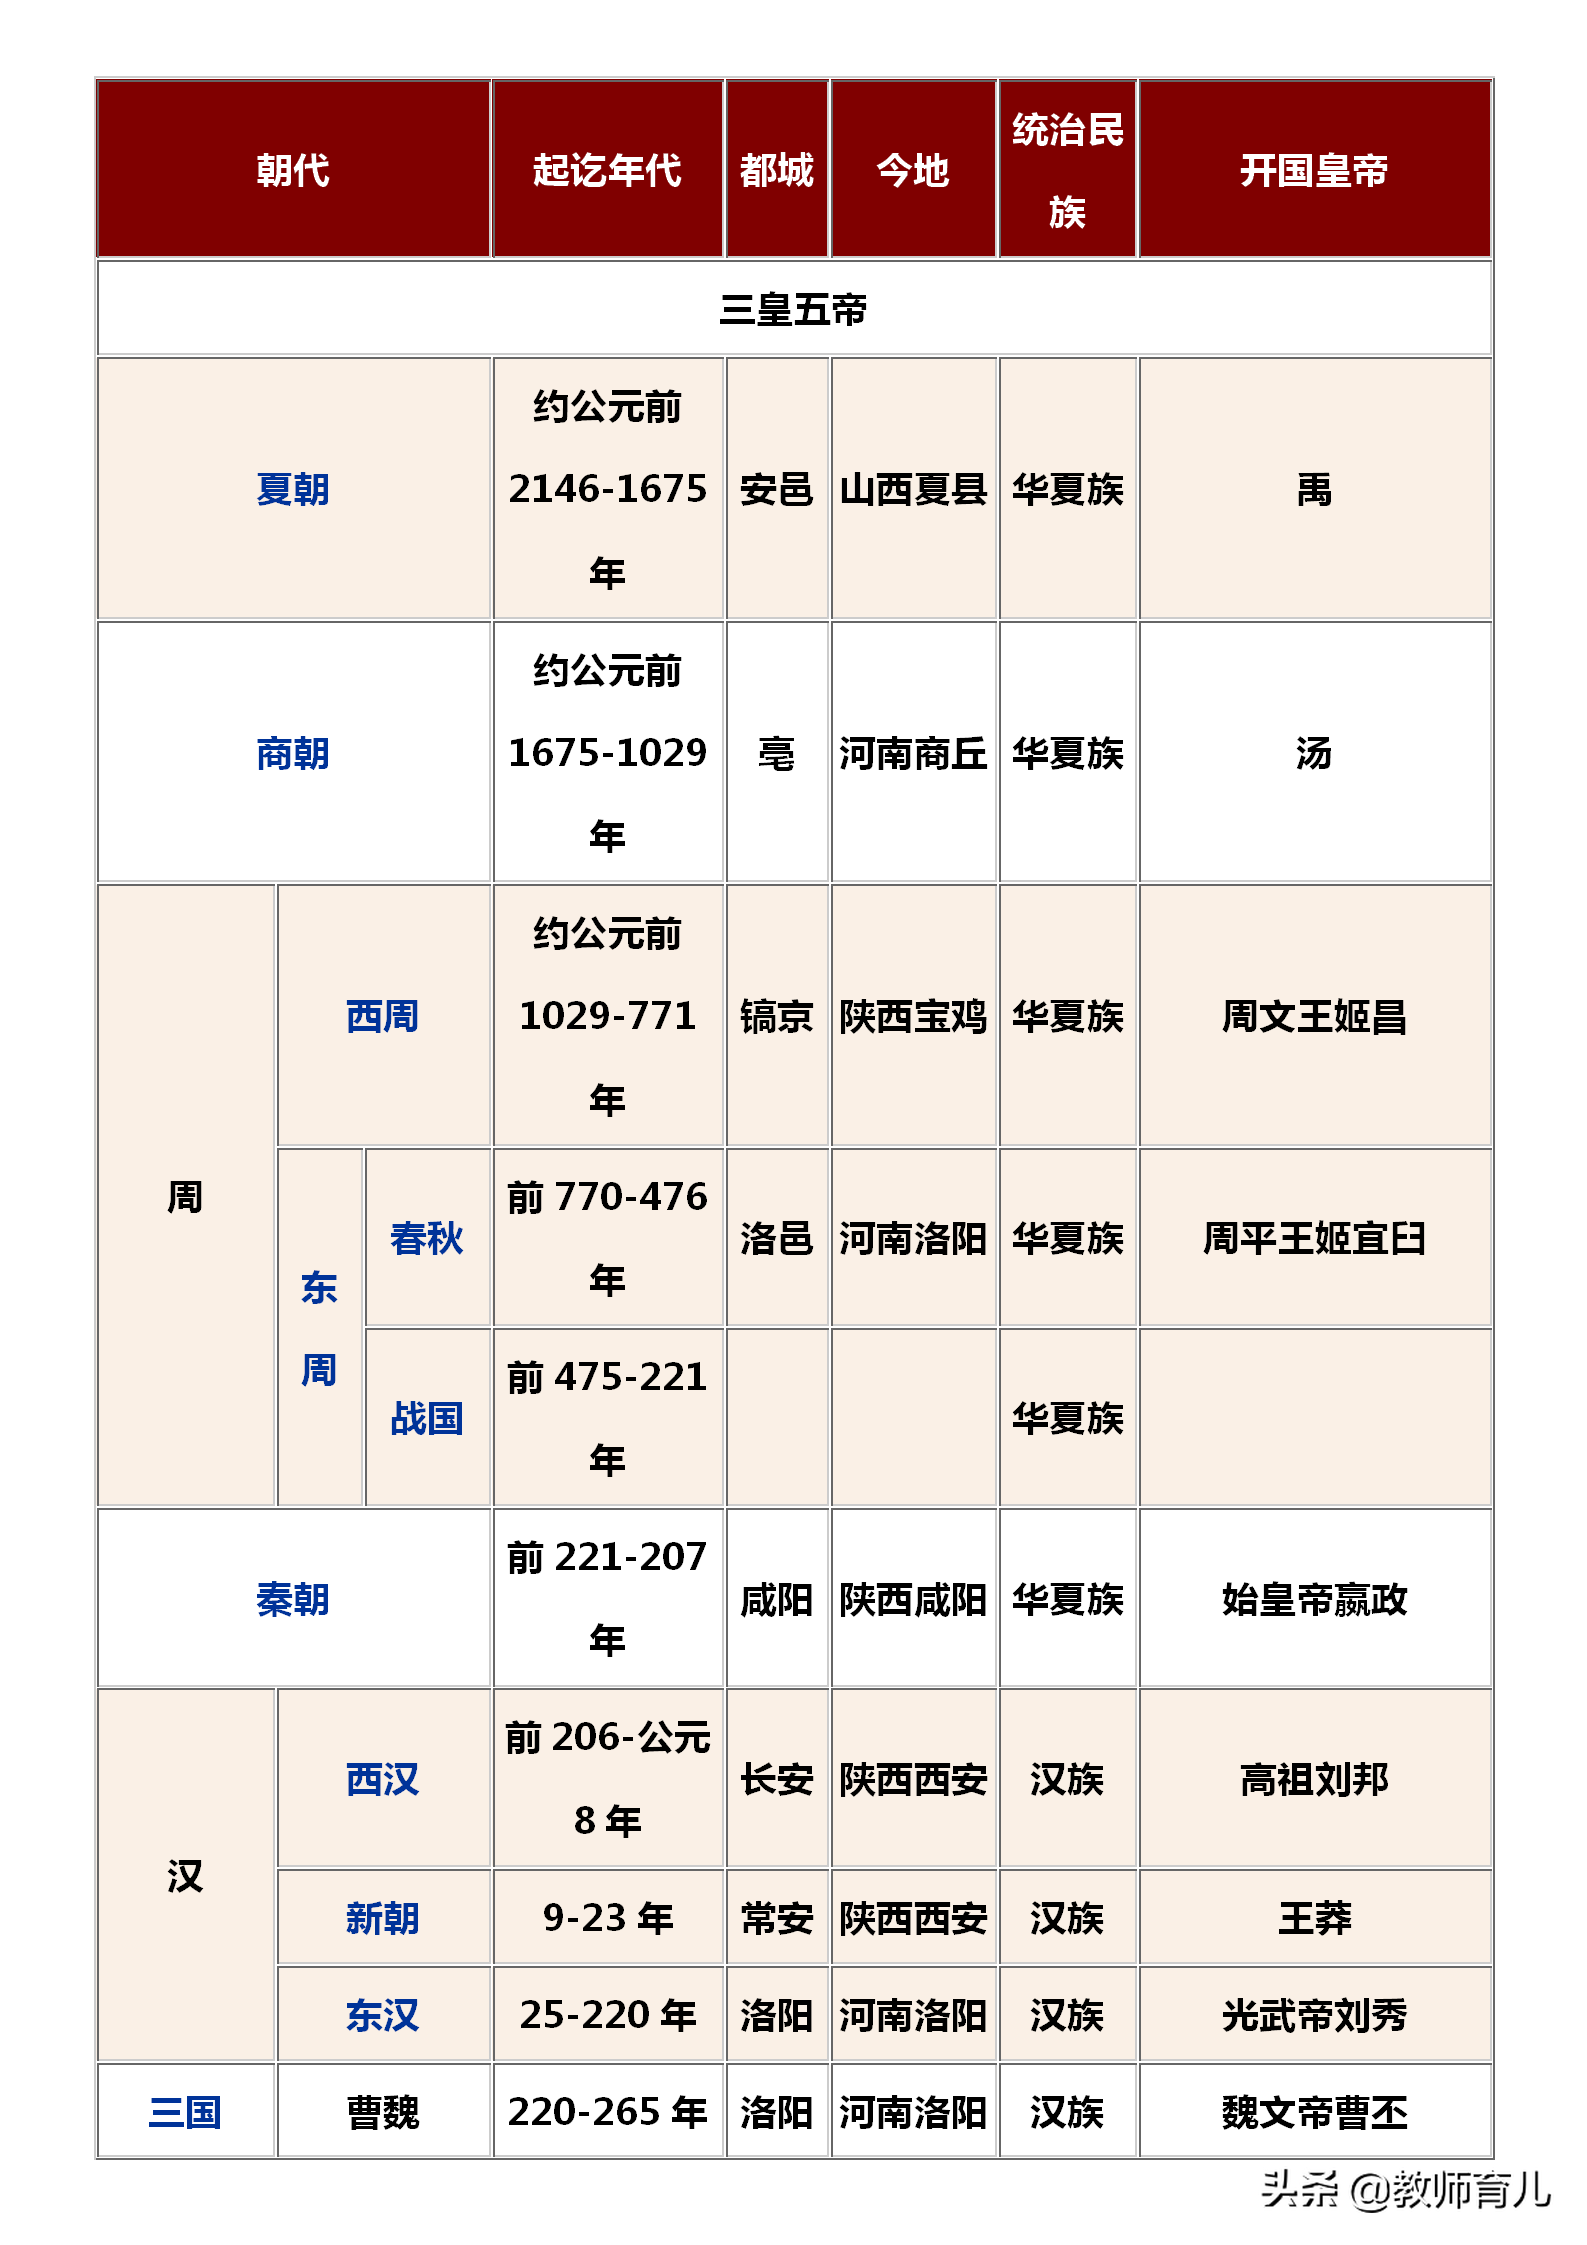 中国历史朝代顺序表背诵口诀中国历史朝代顺序表顺口溜